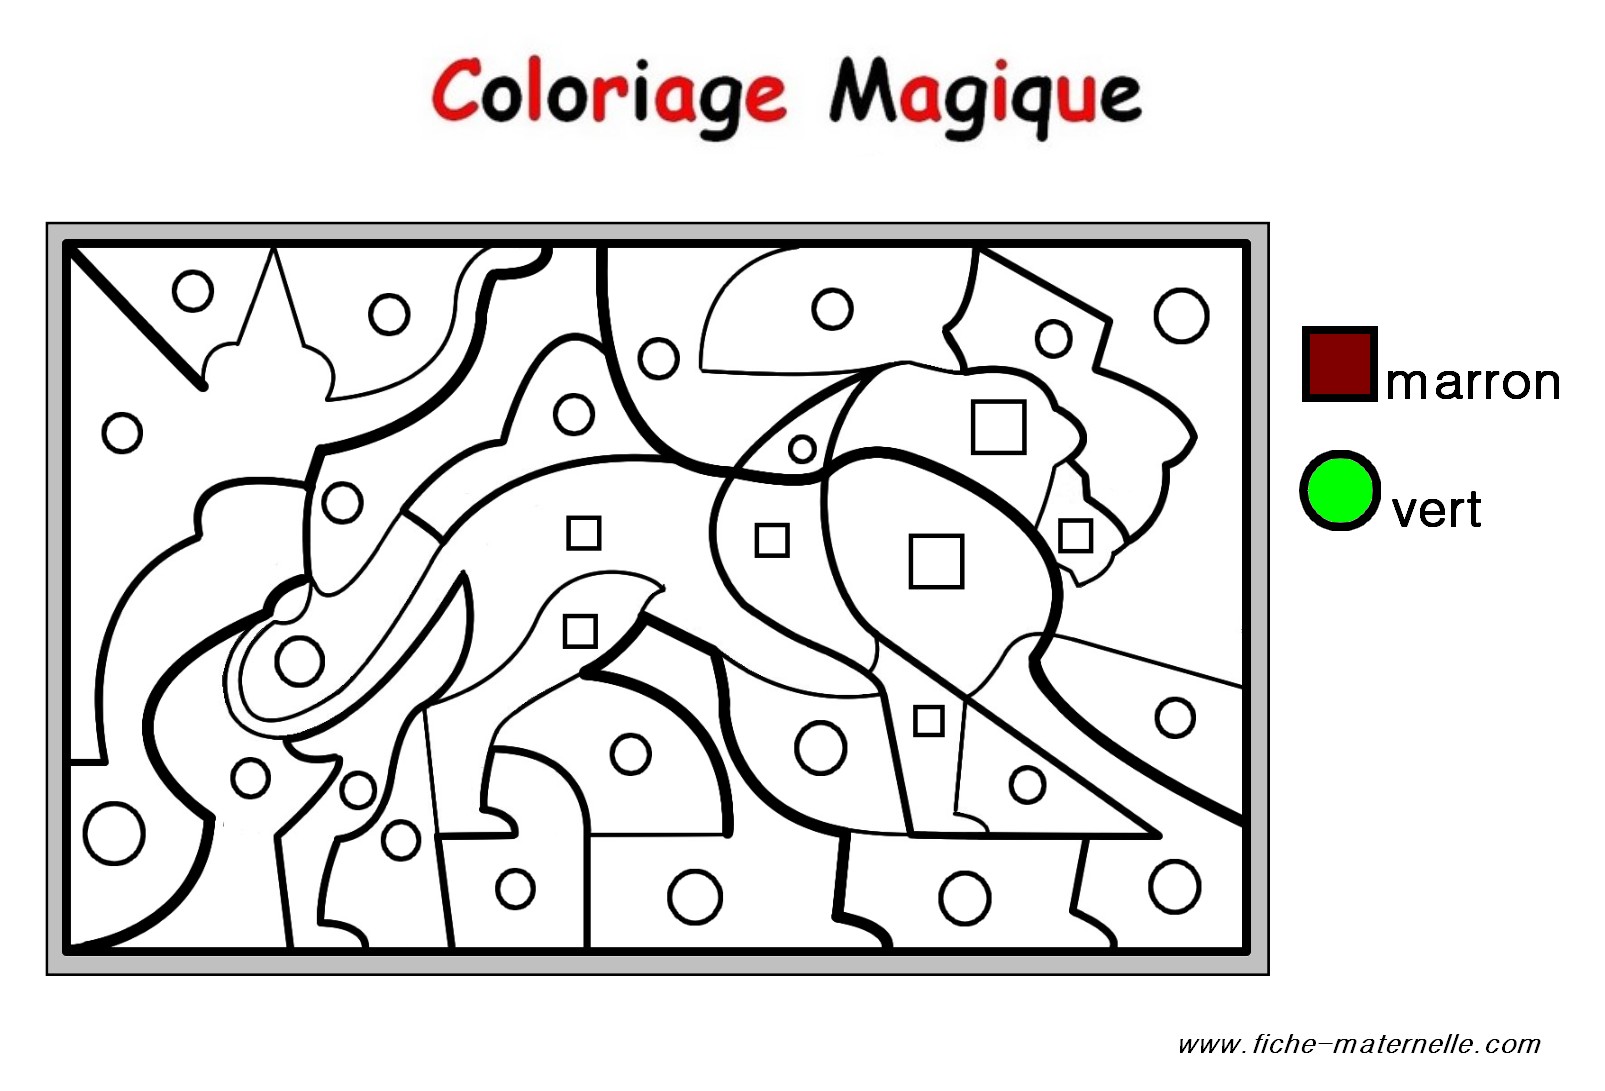 Image #22158 - Coloriage rentrée maternelle gratuit